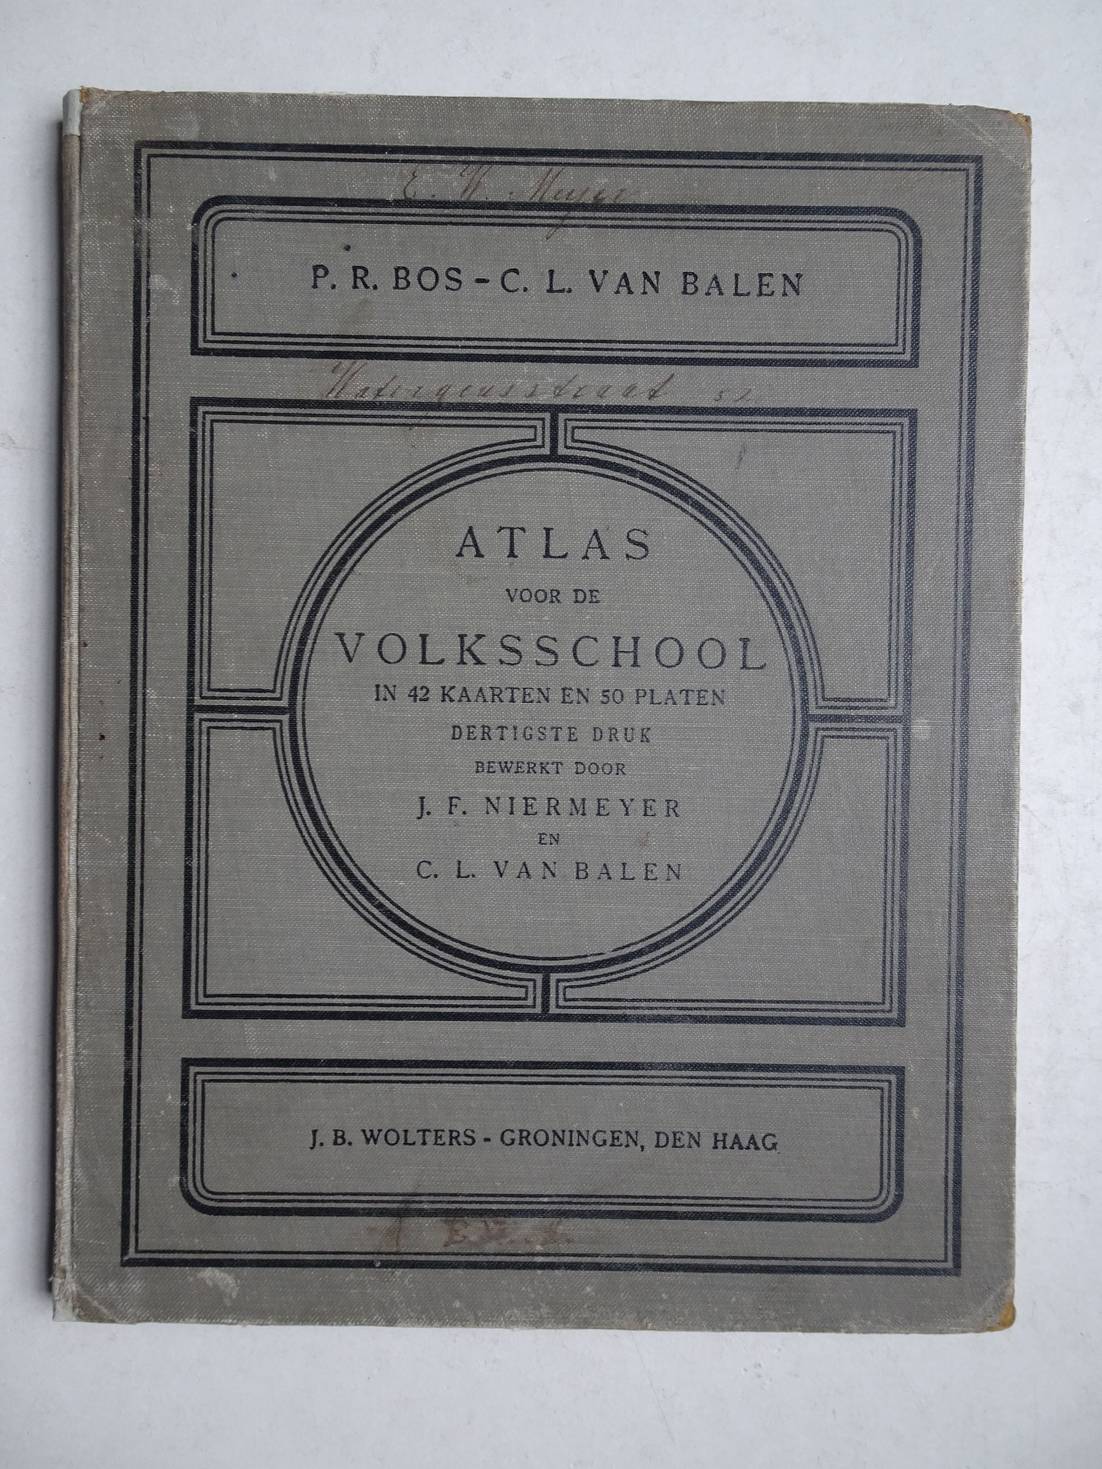 Bos, P.R. & Balen, C.L. van. - Atlas voor de Volksschool in 42 kaarten en 50 platen.